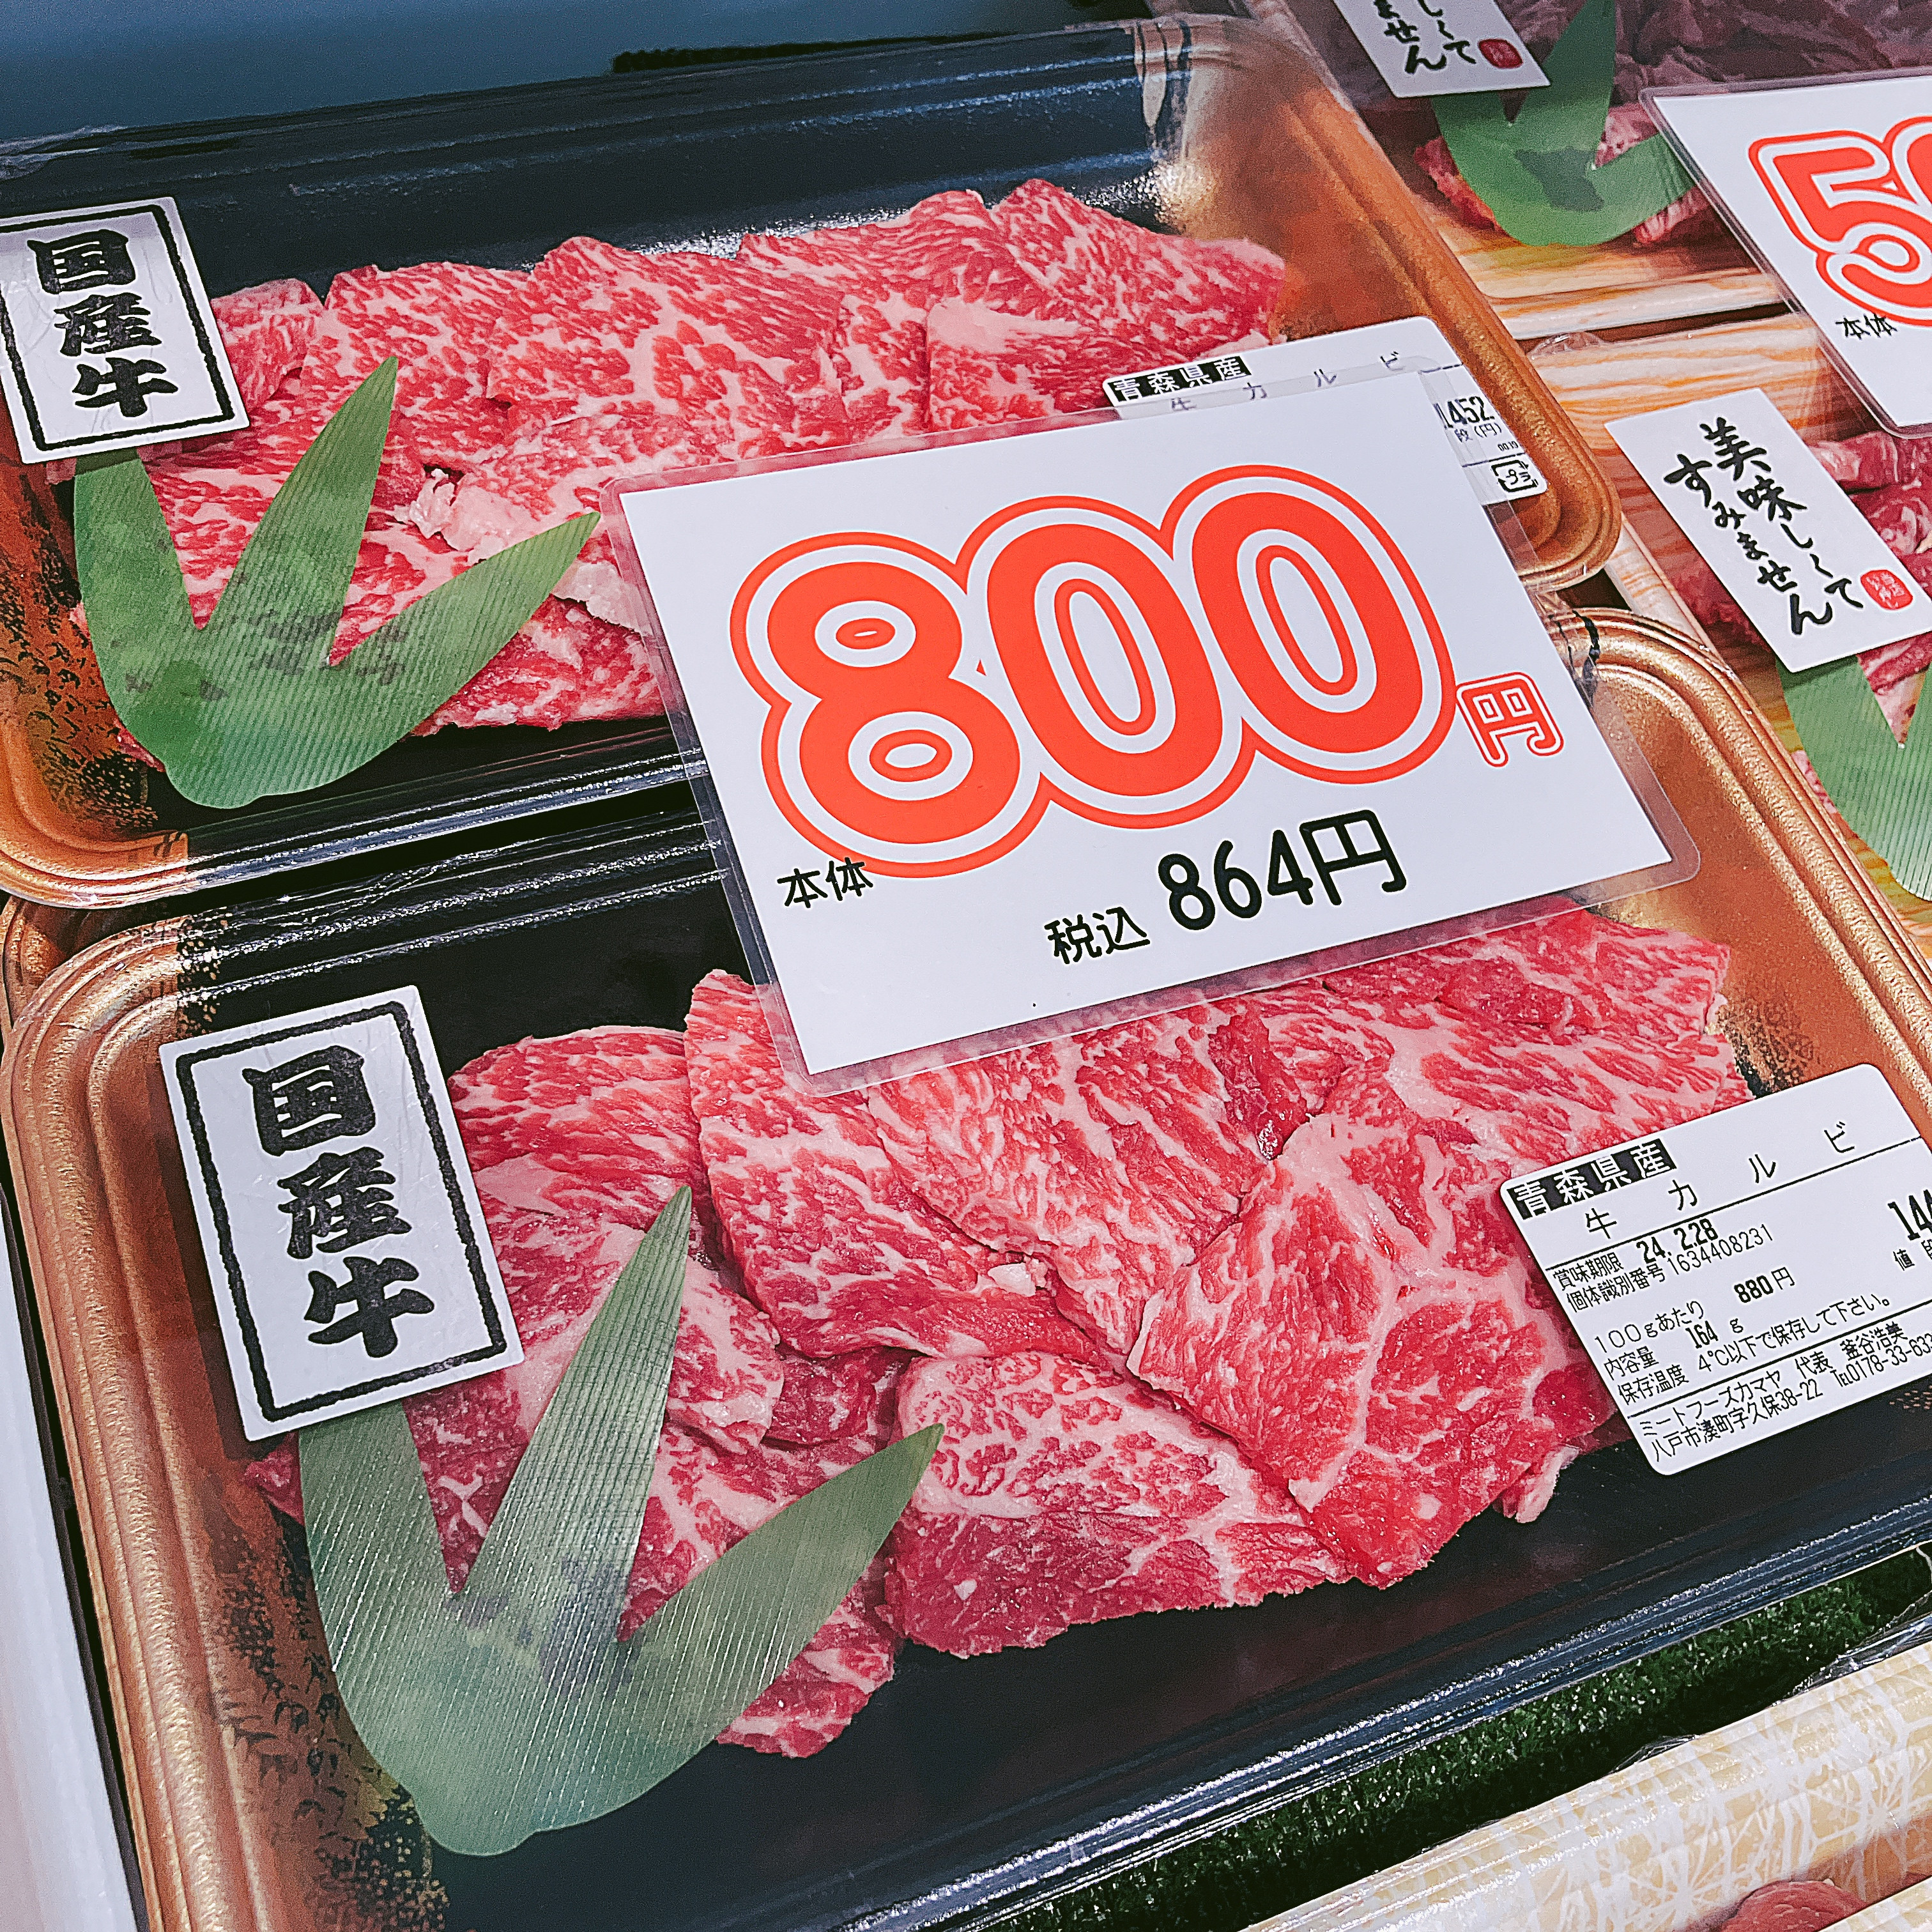 本日は青森県産牛カルビなどがお買得です。